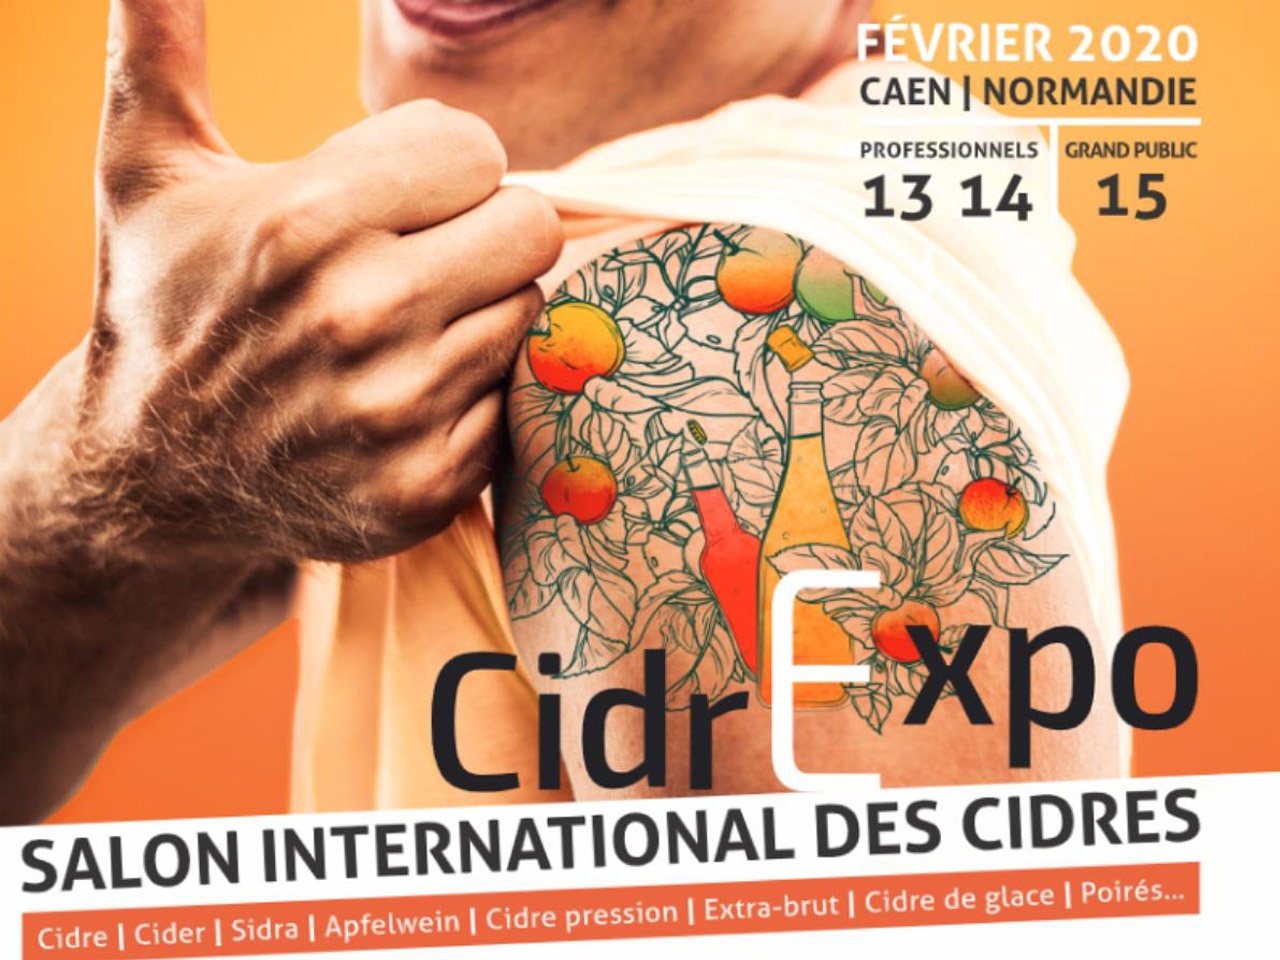 Cidrexpo, le 1er salon international des cidres arrive en France !